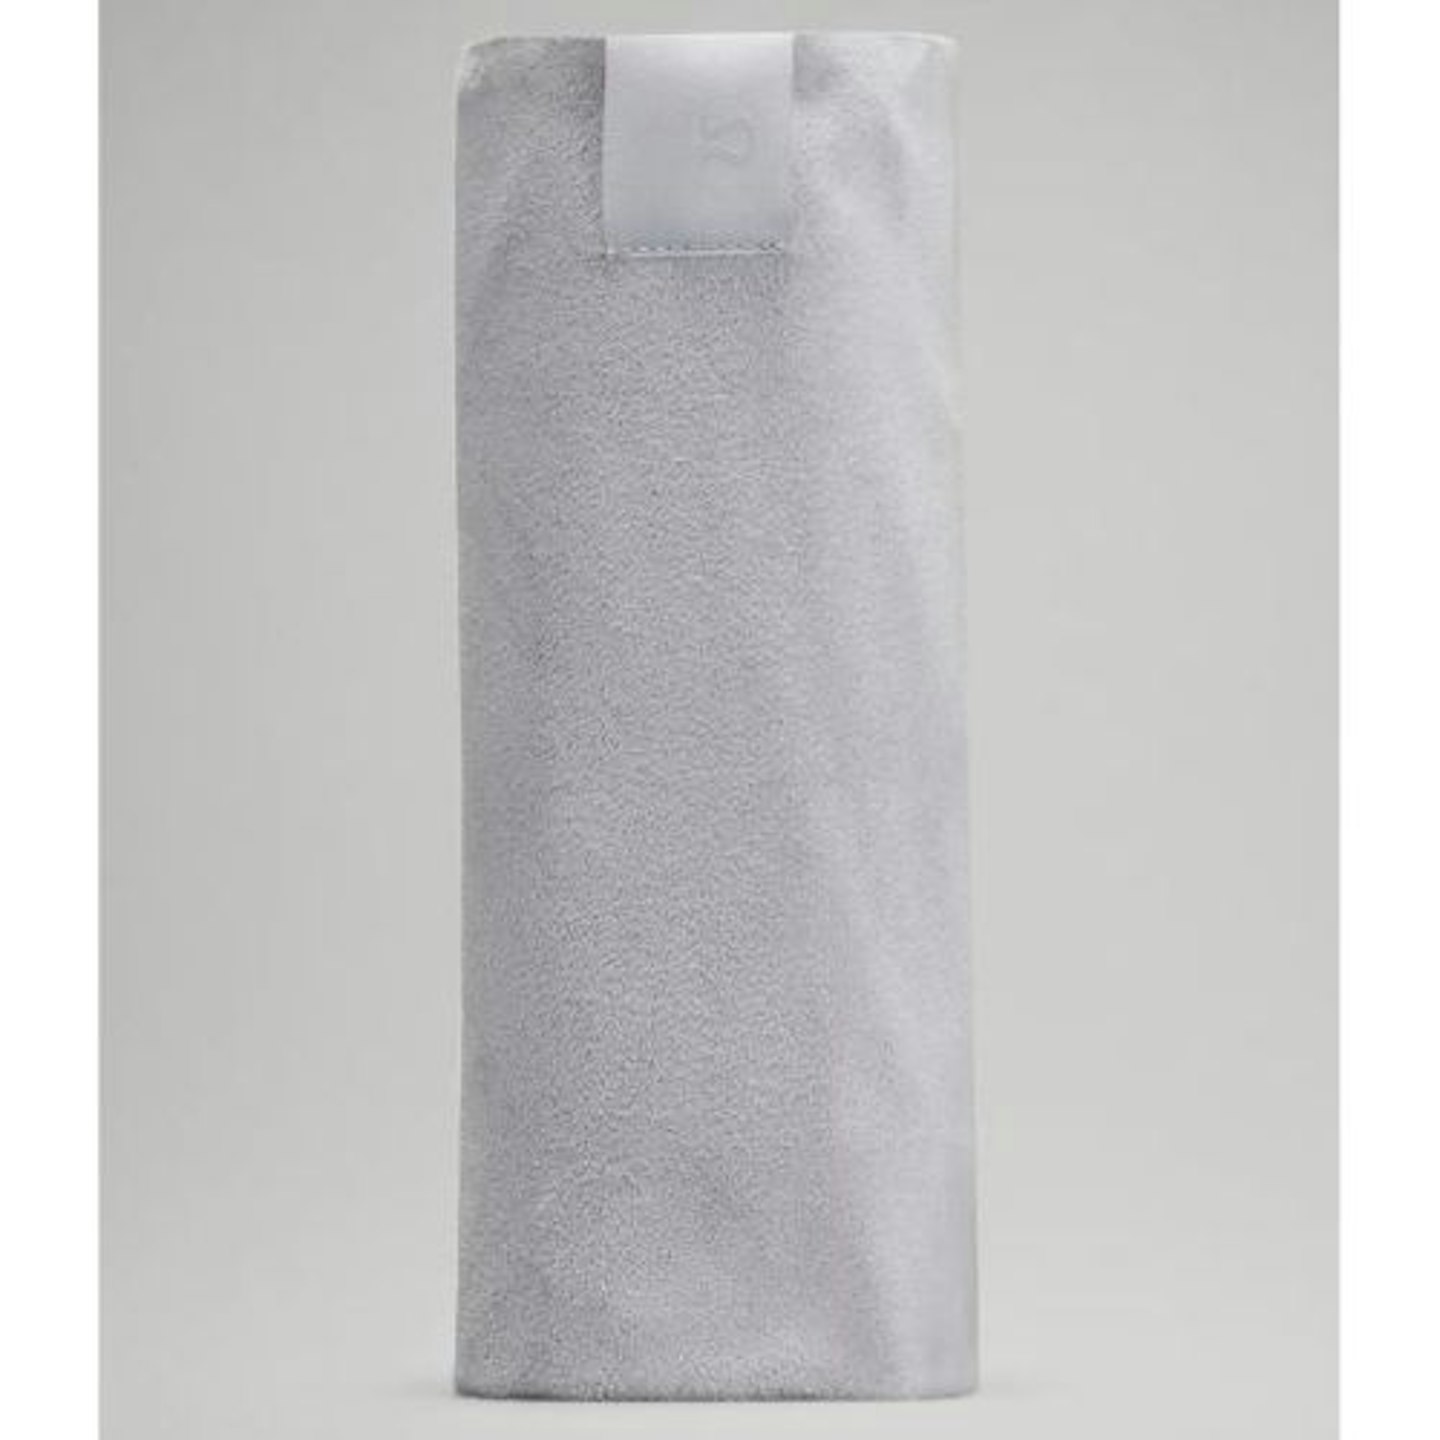 Lululemon The Towel